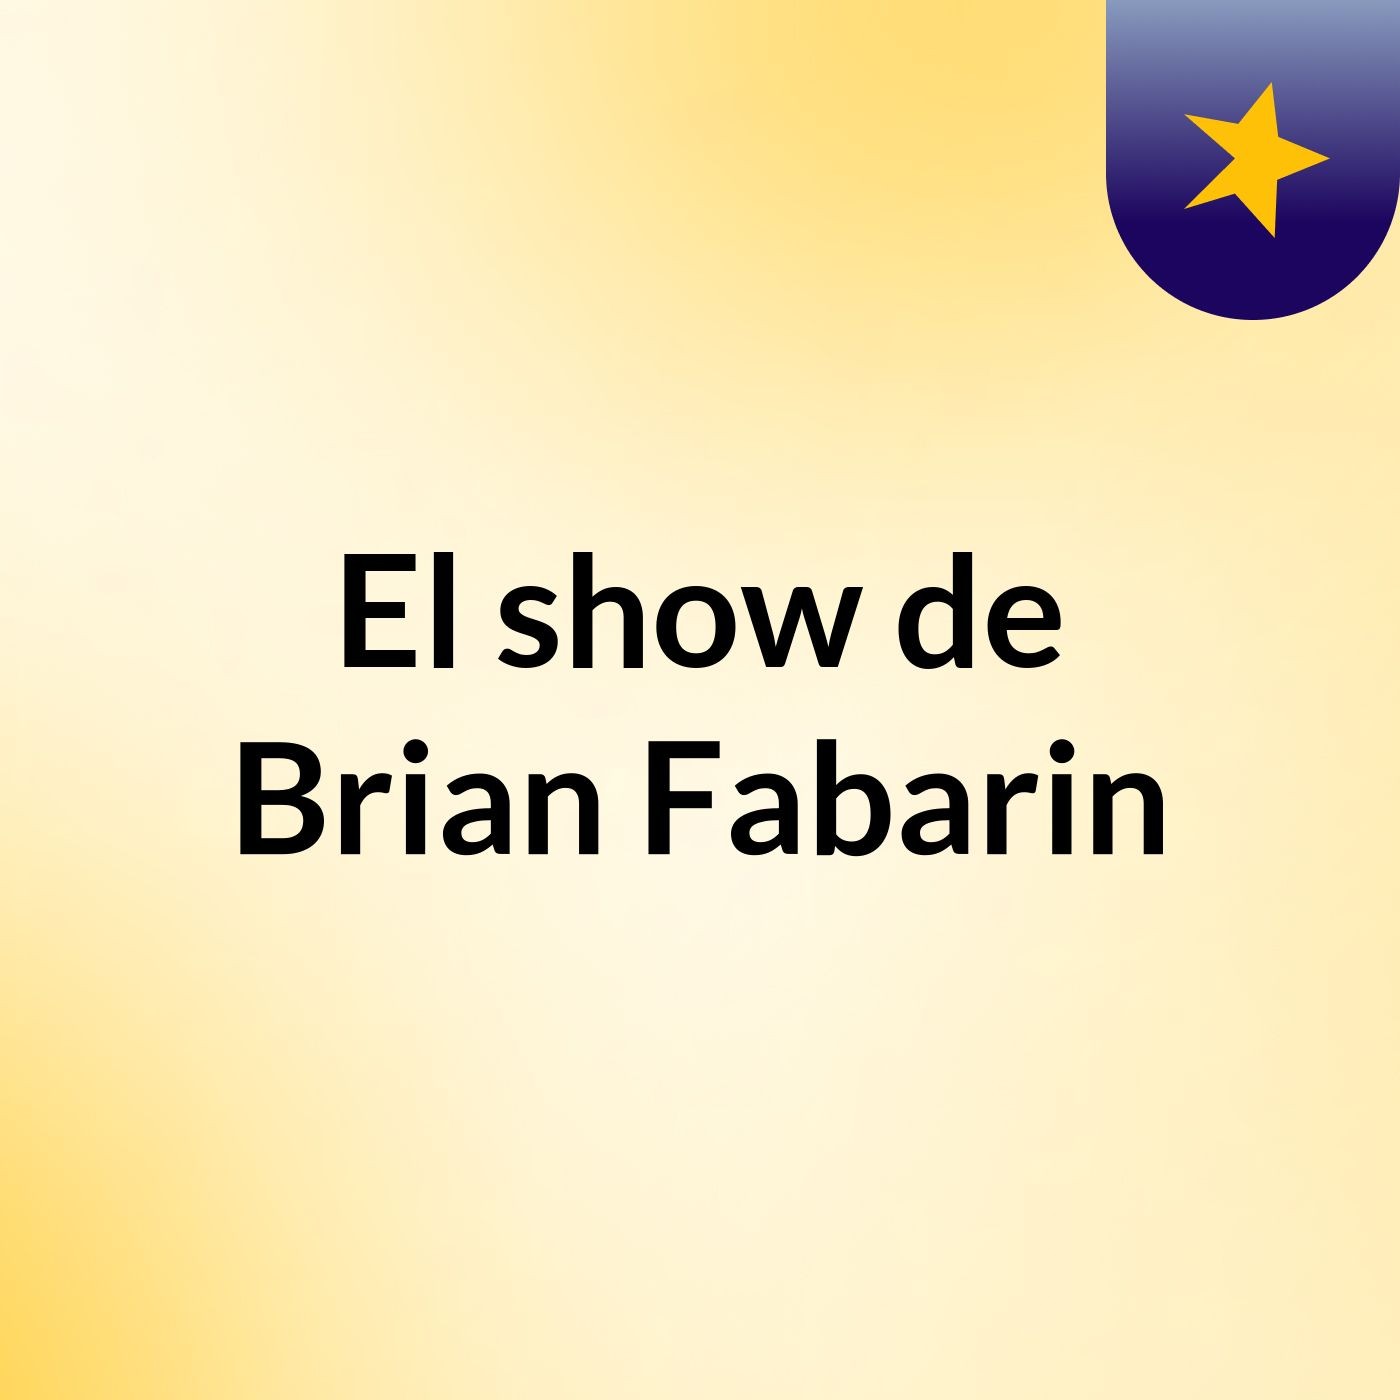 El show de Brian Fabarin